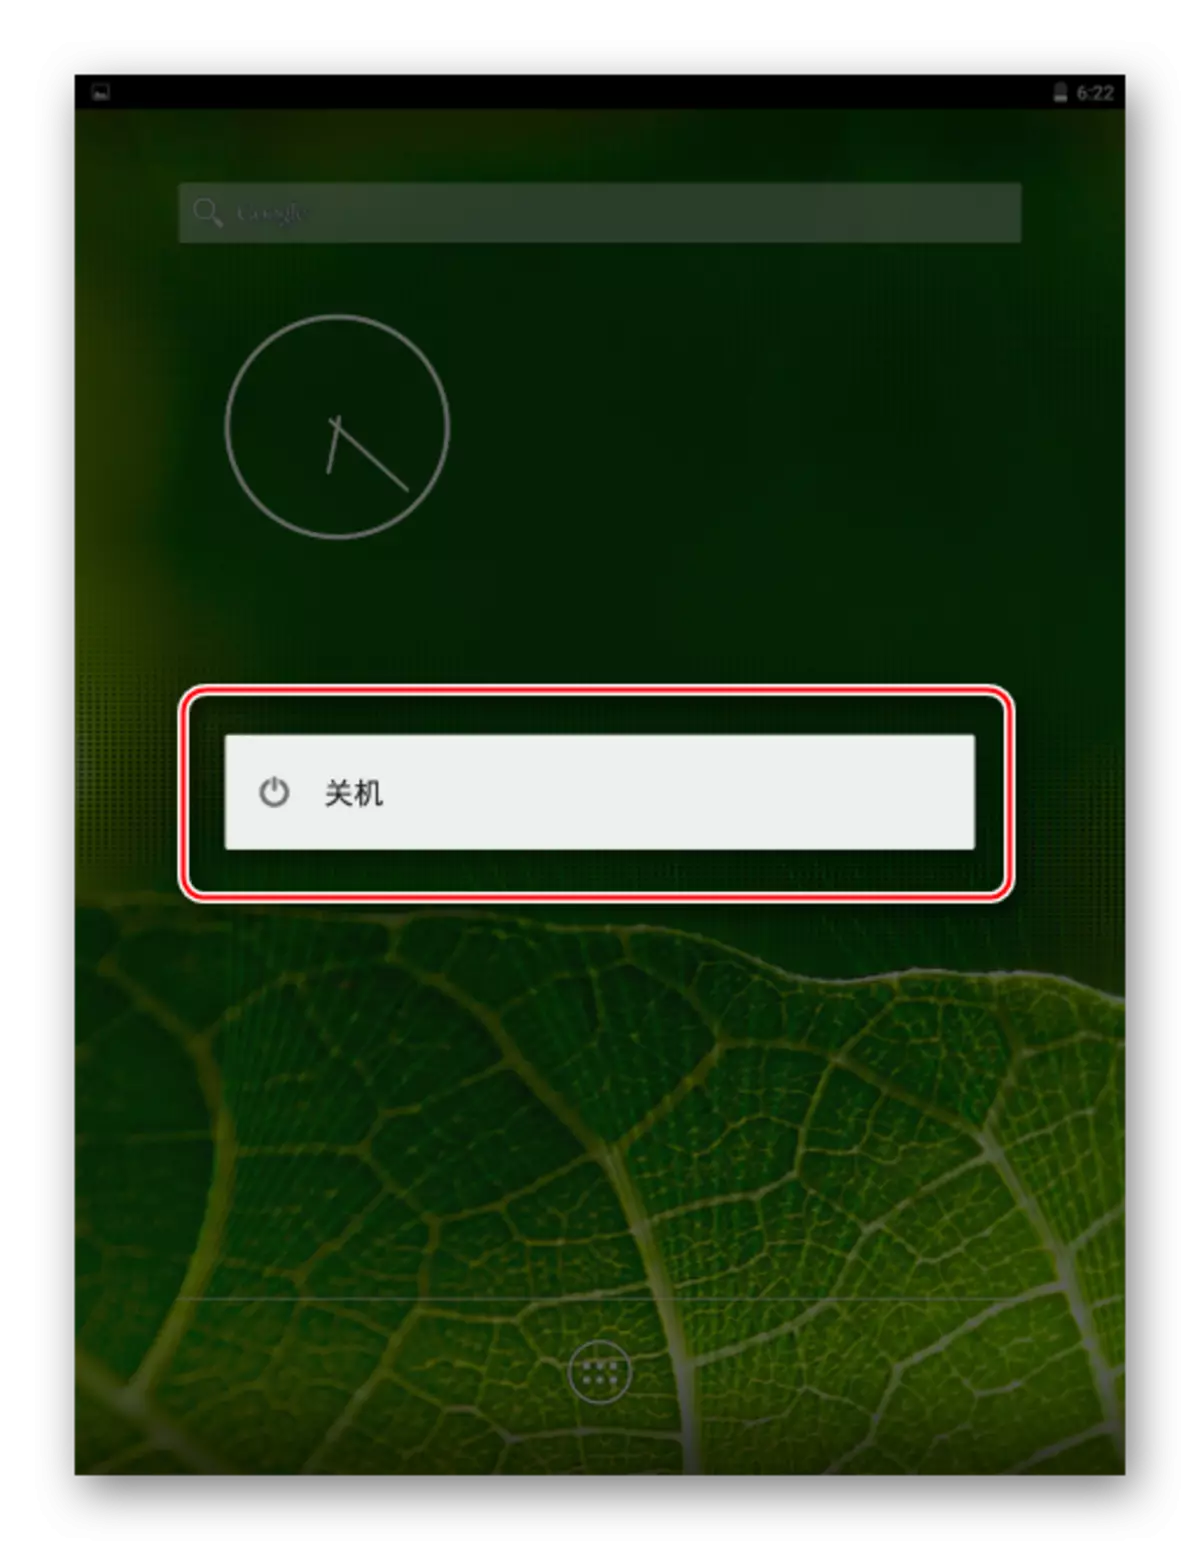 Xiaomi MIPAD 2 Het apparaat uitschakelen onder de controle van Pure Android